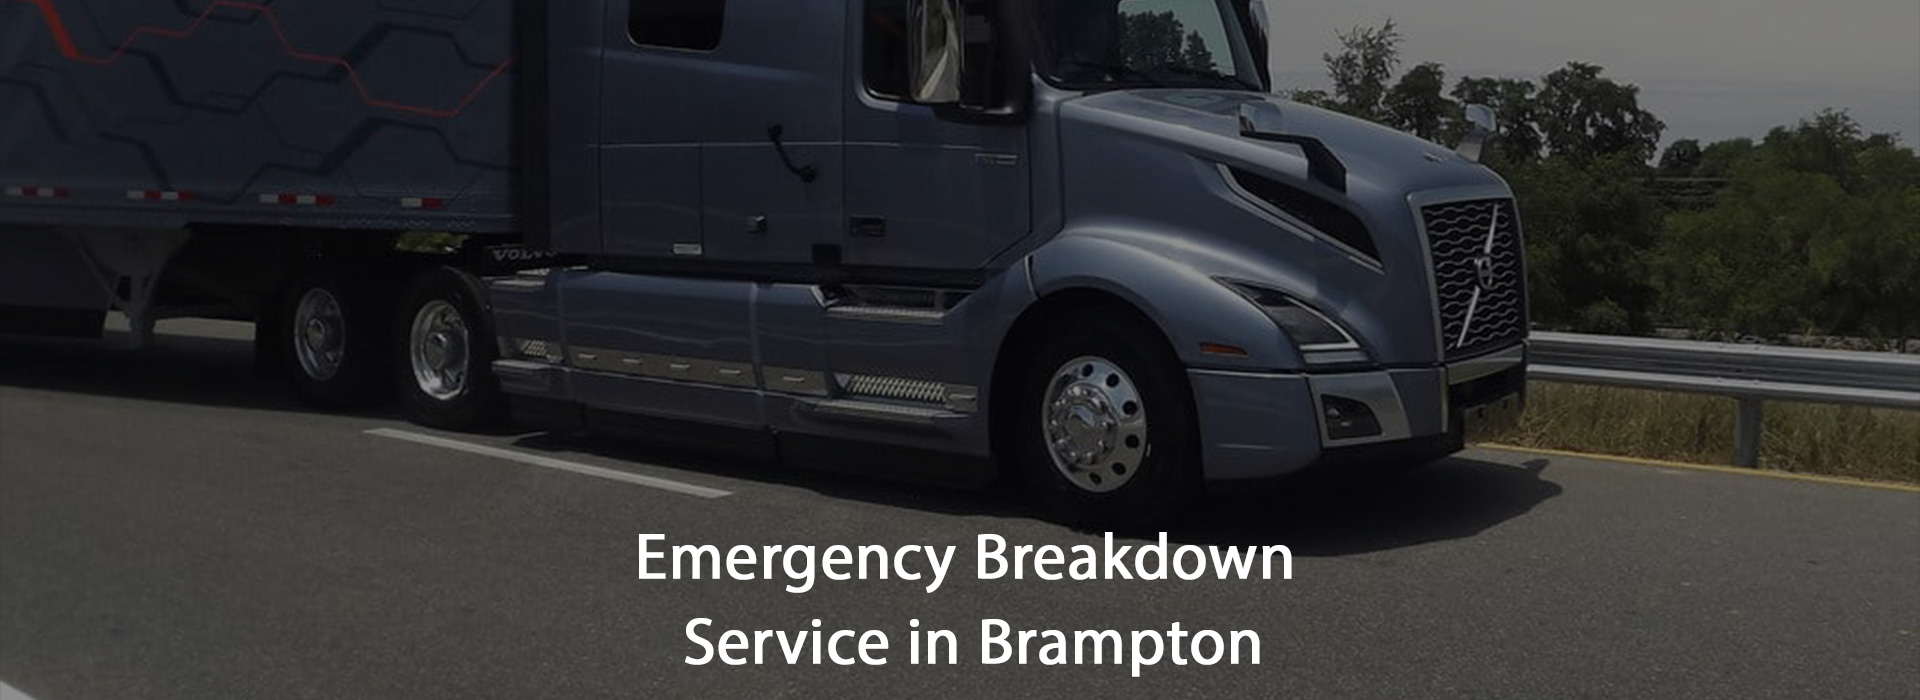 Emergency Breakdown Service in Brampton